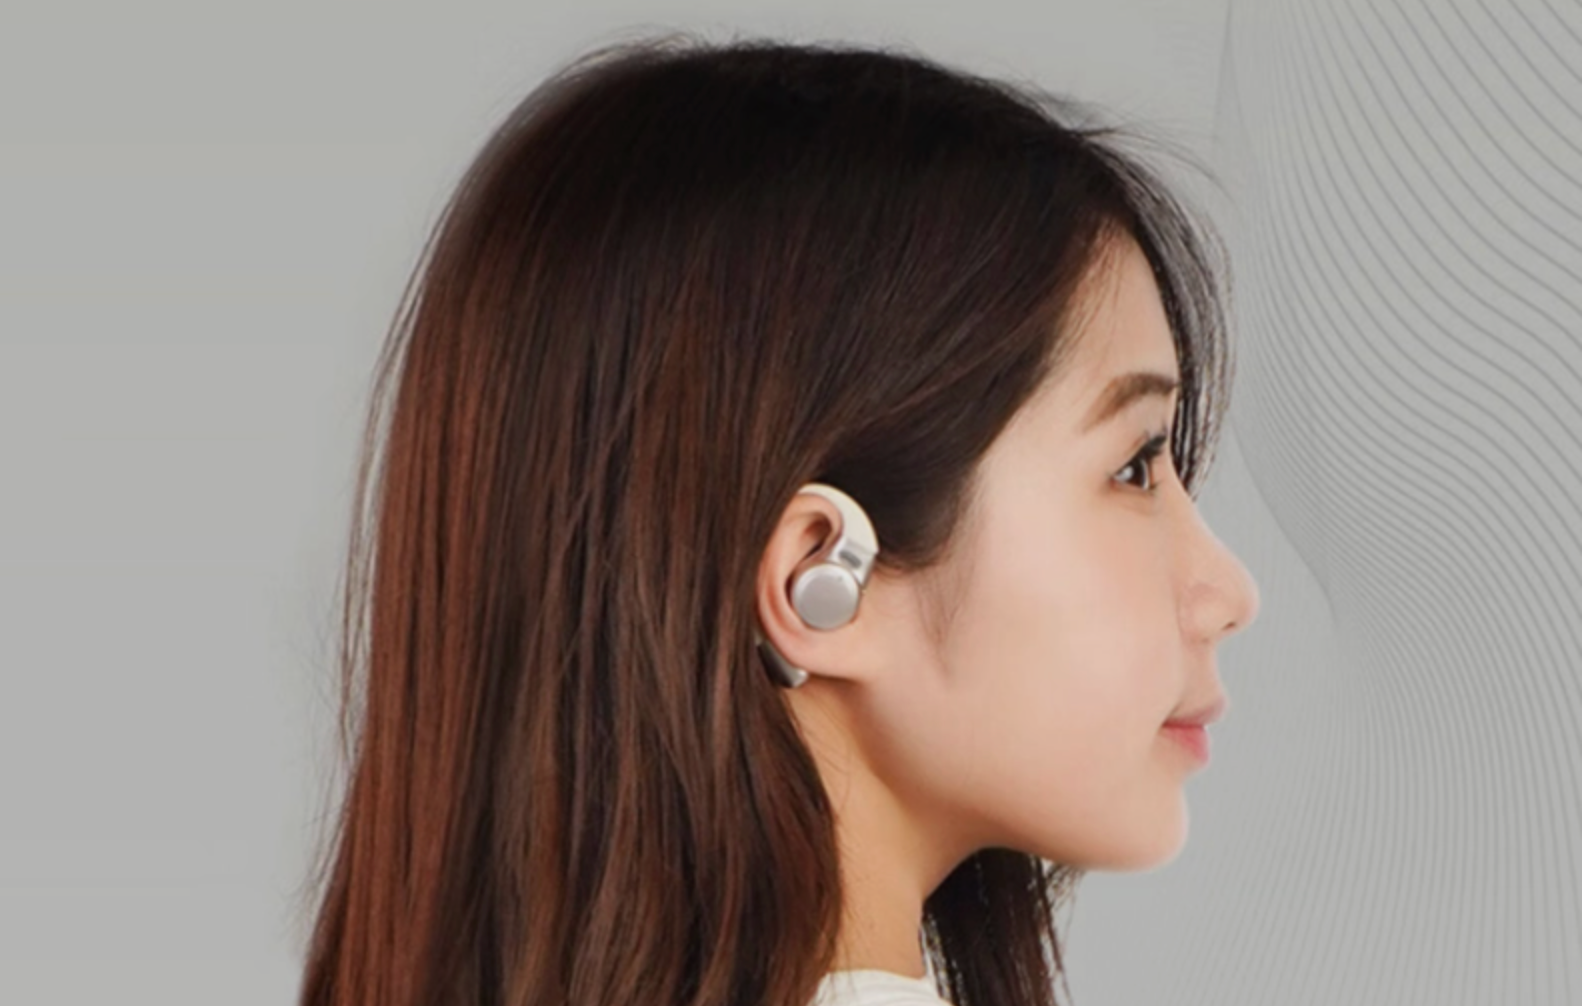 Meizu har avduket de unike trådløse hodetelefonene OpenBlus 2